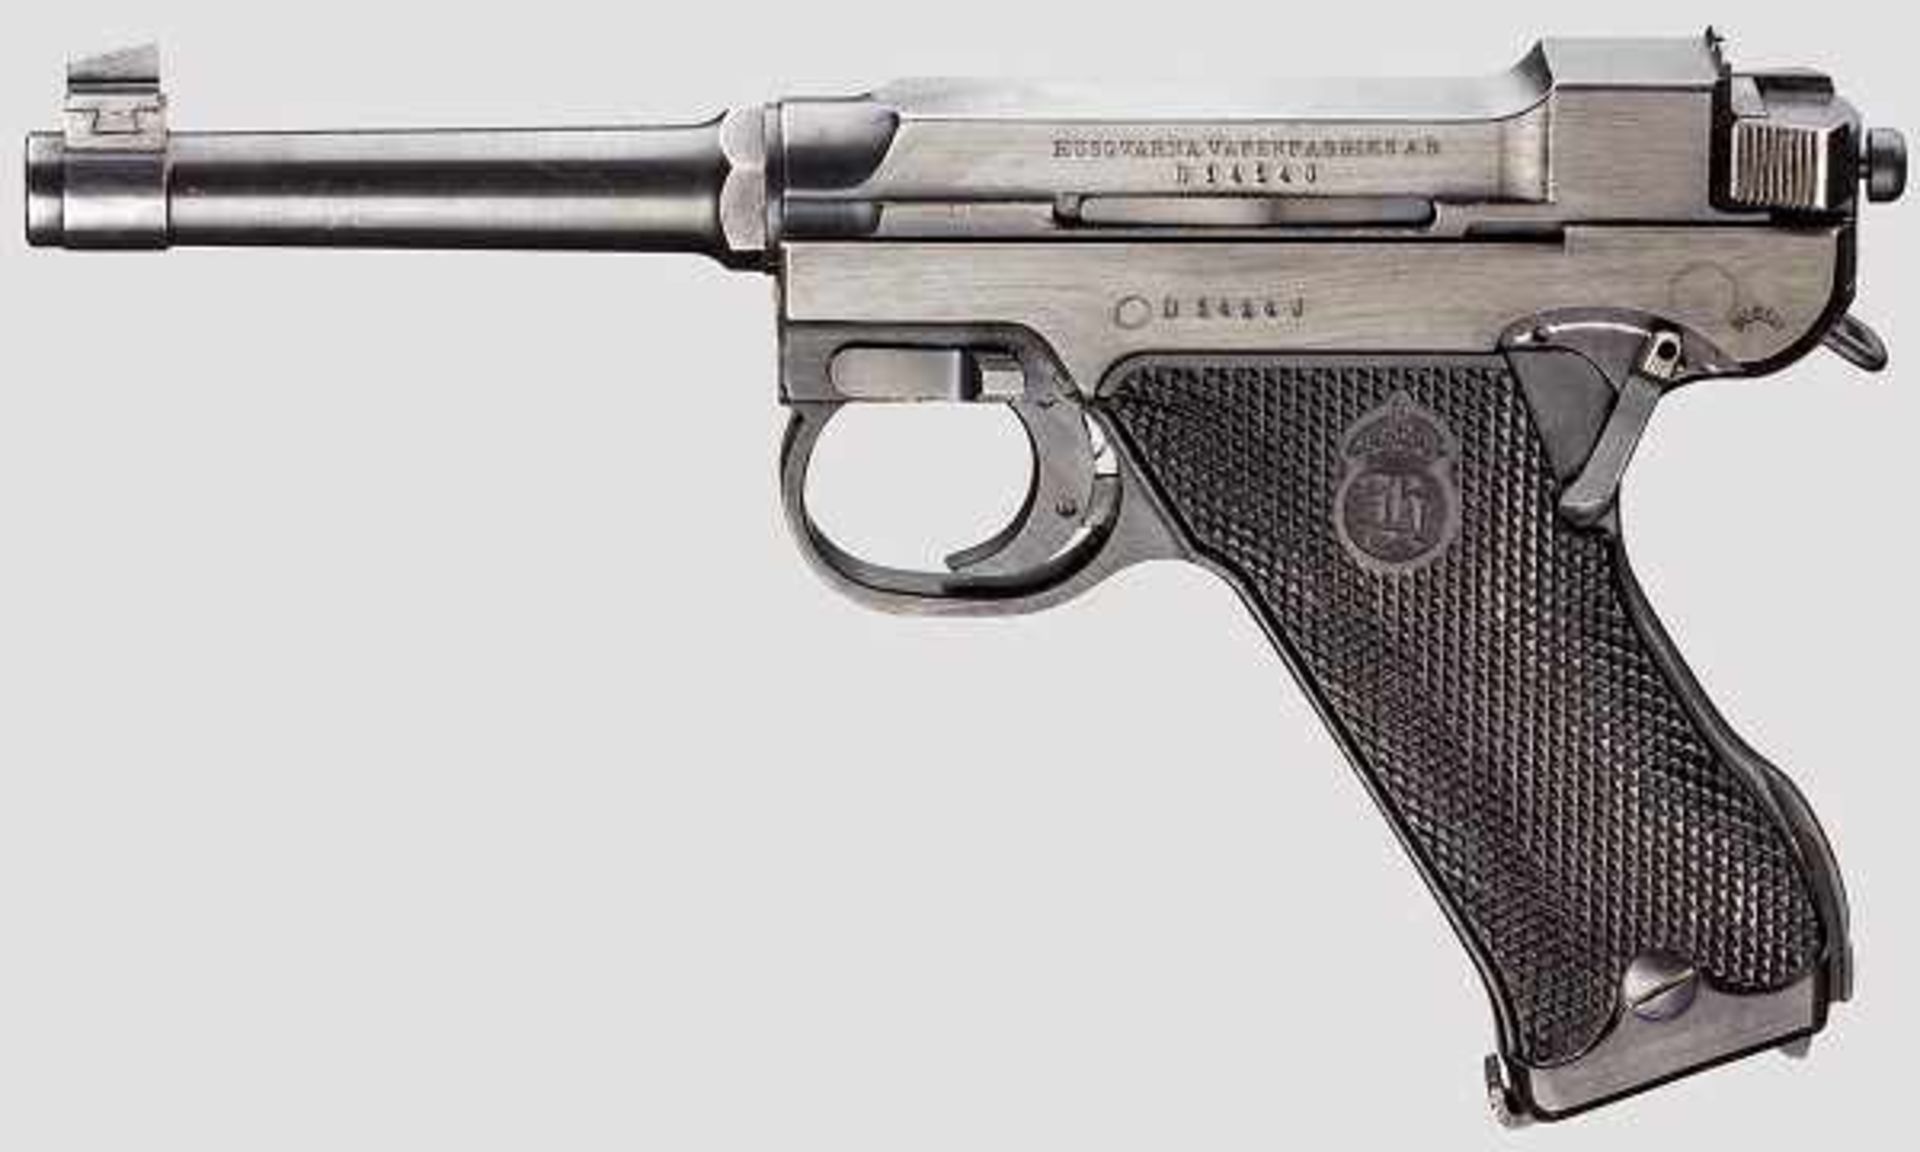 Husqvarna M 40, Polizei Kal. 9 mm Luger, Nr. D14140. Nummerngleich. Blanker Lauf, Länge 118 mm.